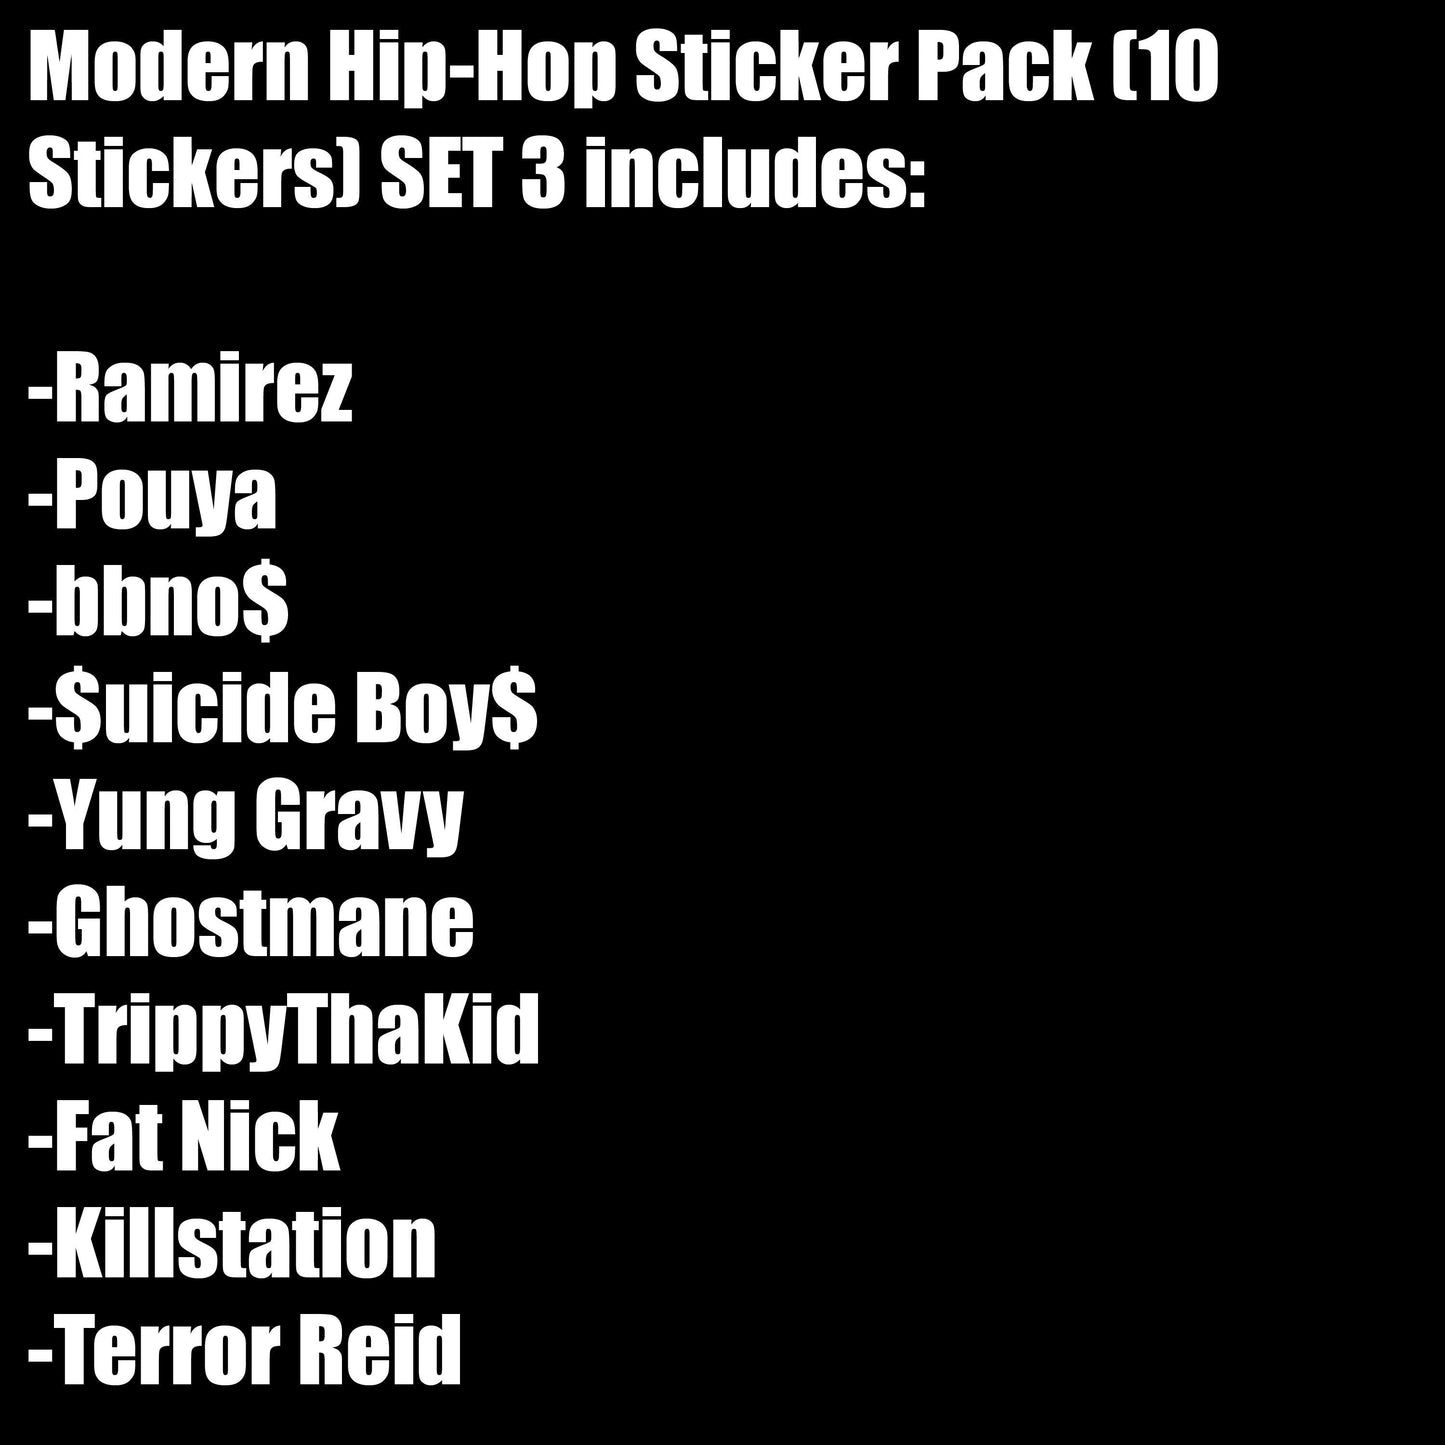 Modern Hip-Hop Sticker Pack (10 Stickers) Set 3